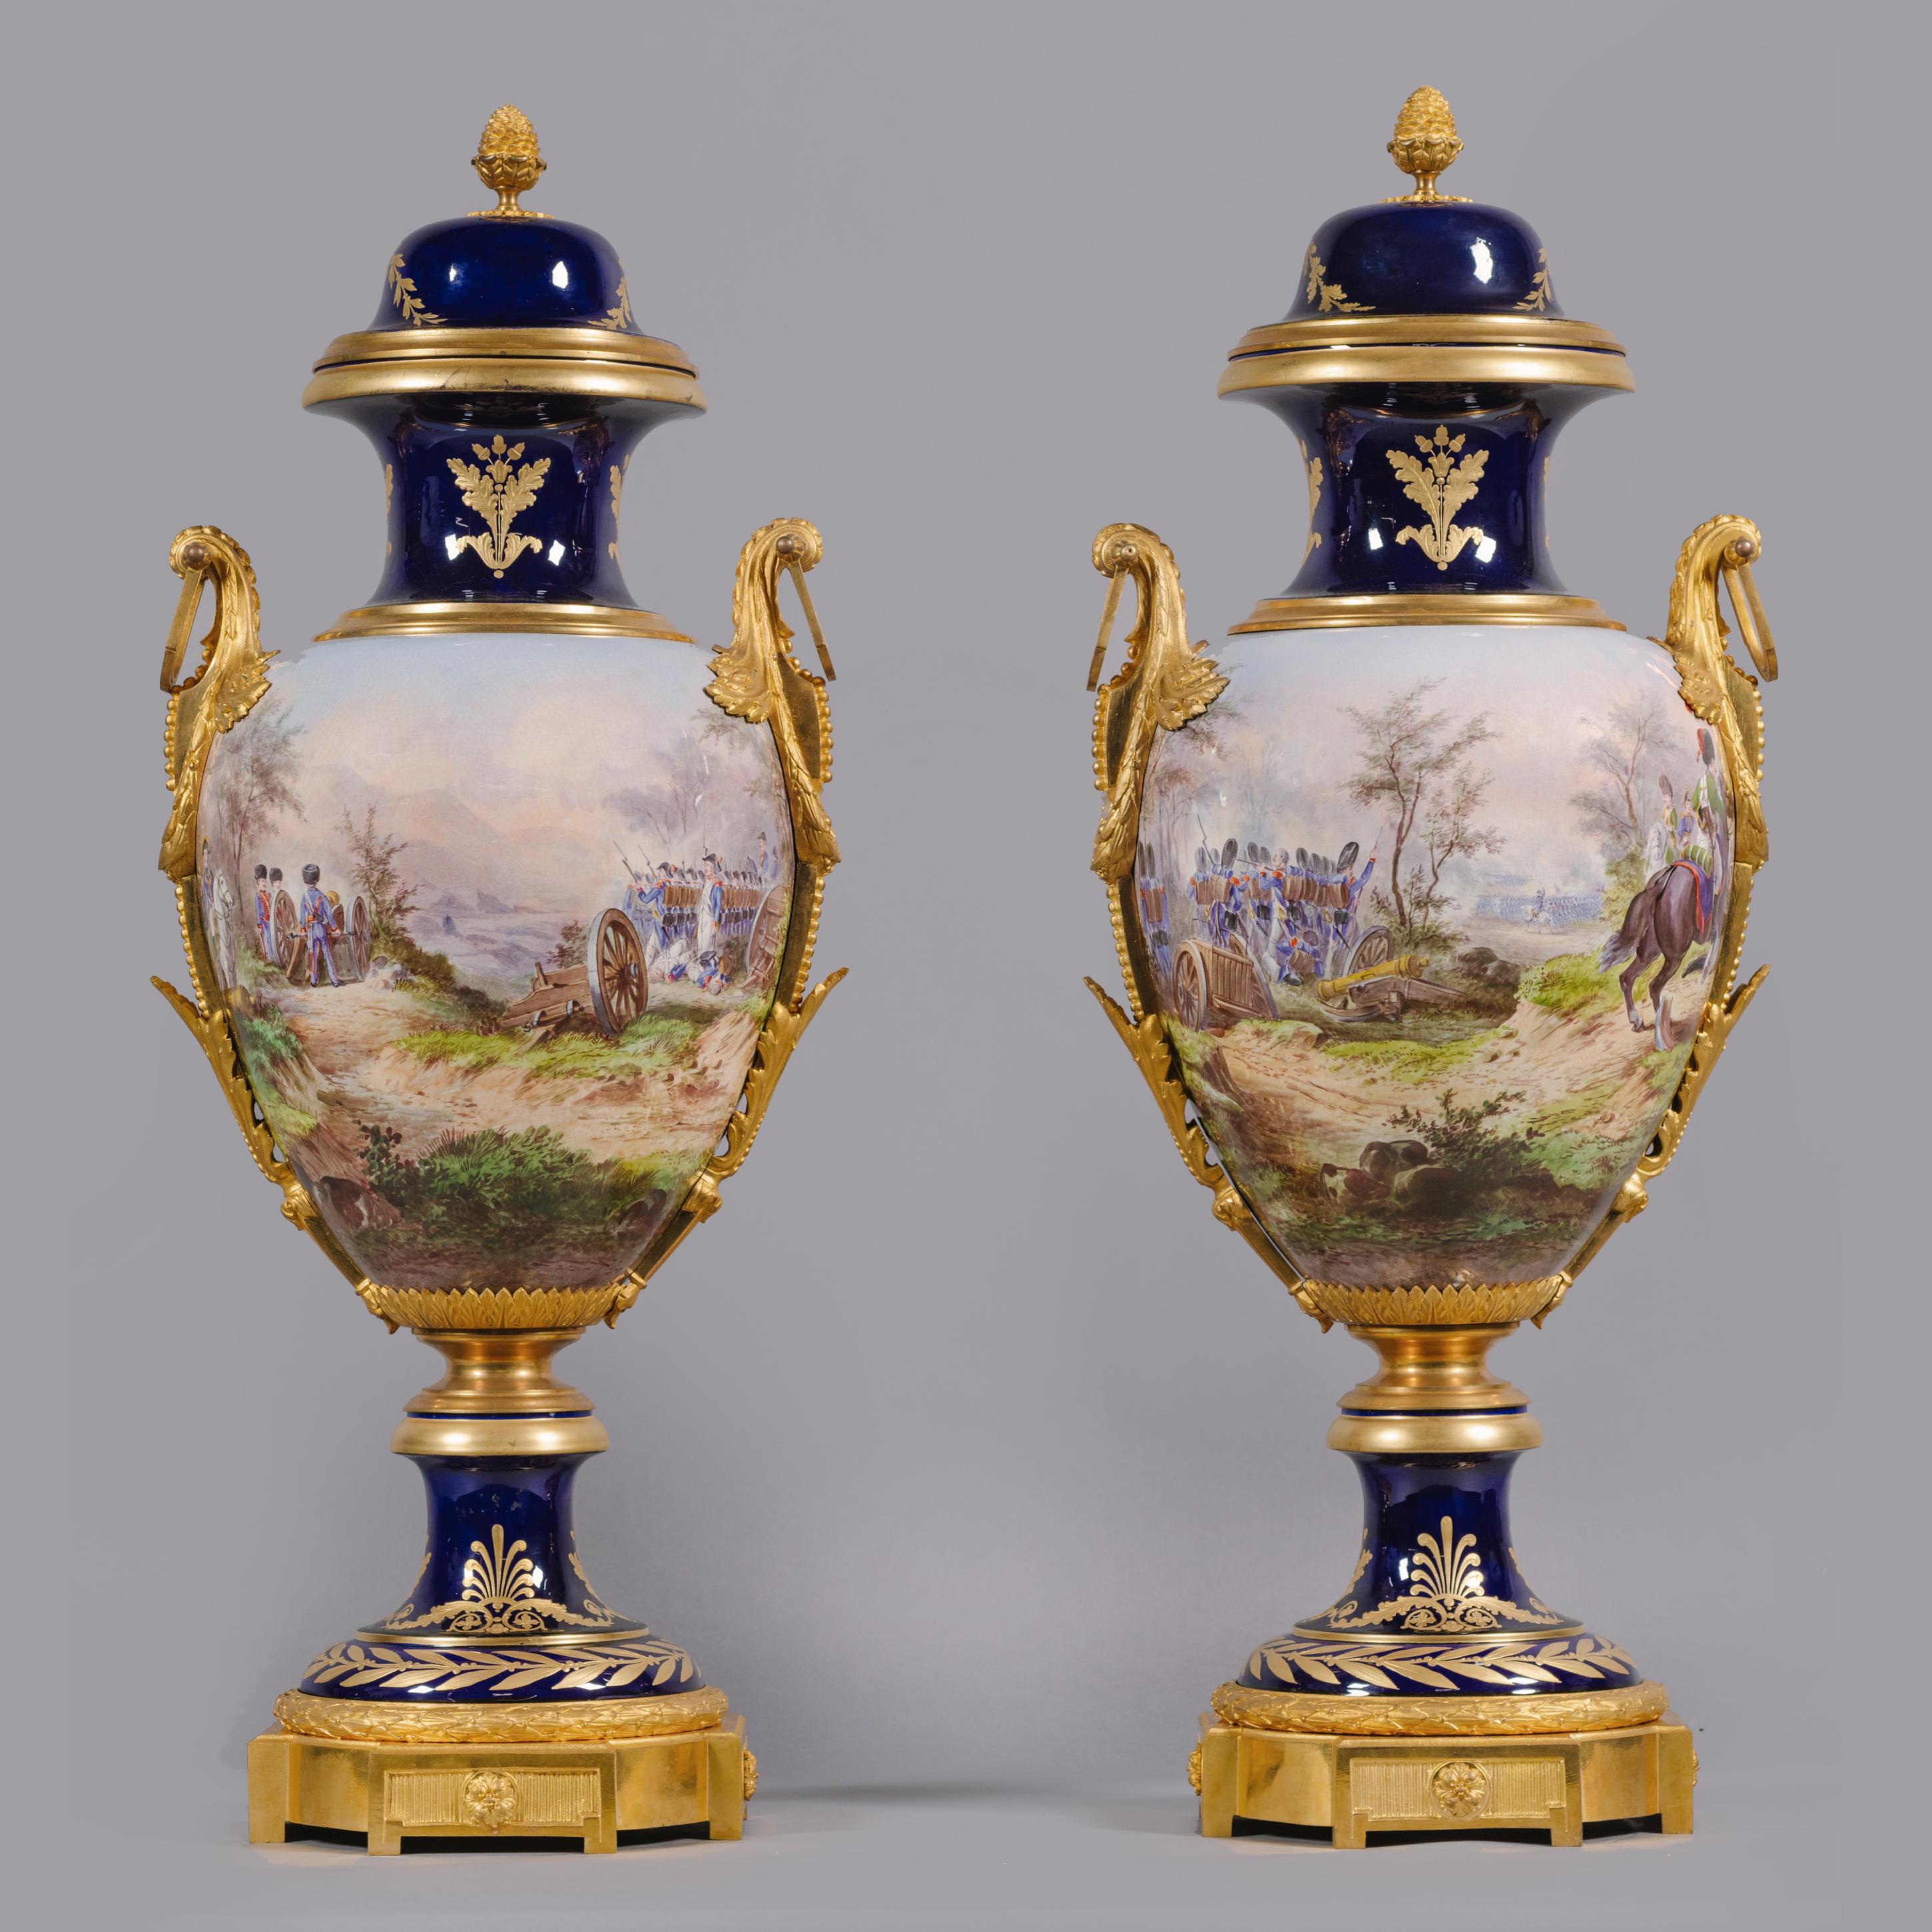 Paire de vases napoléoniens en porcelaine à fond bleu de cobalt, montés en bronze doré, de style Sèvres.

Signé par l'artiste 'H. Desprez Sèvres'.

Chaque vase est de forme ovoïde inversée, finement peint sur toute sa surface de scènes de